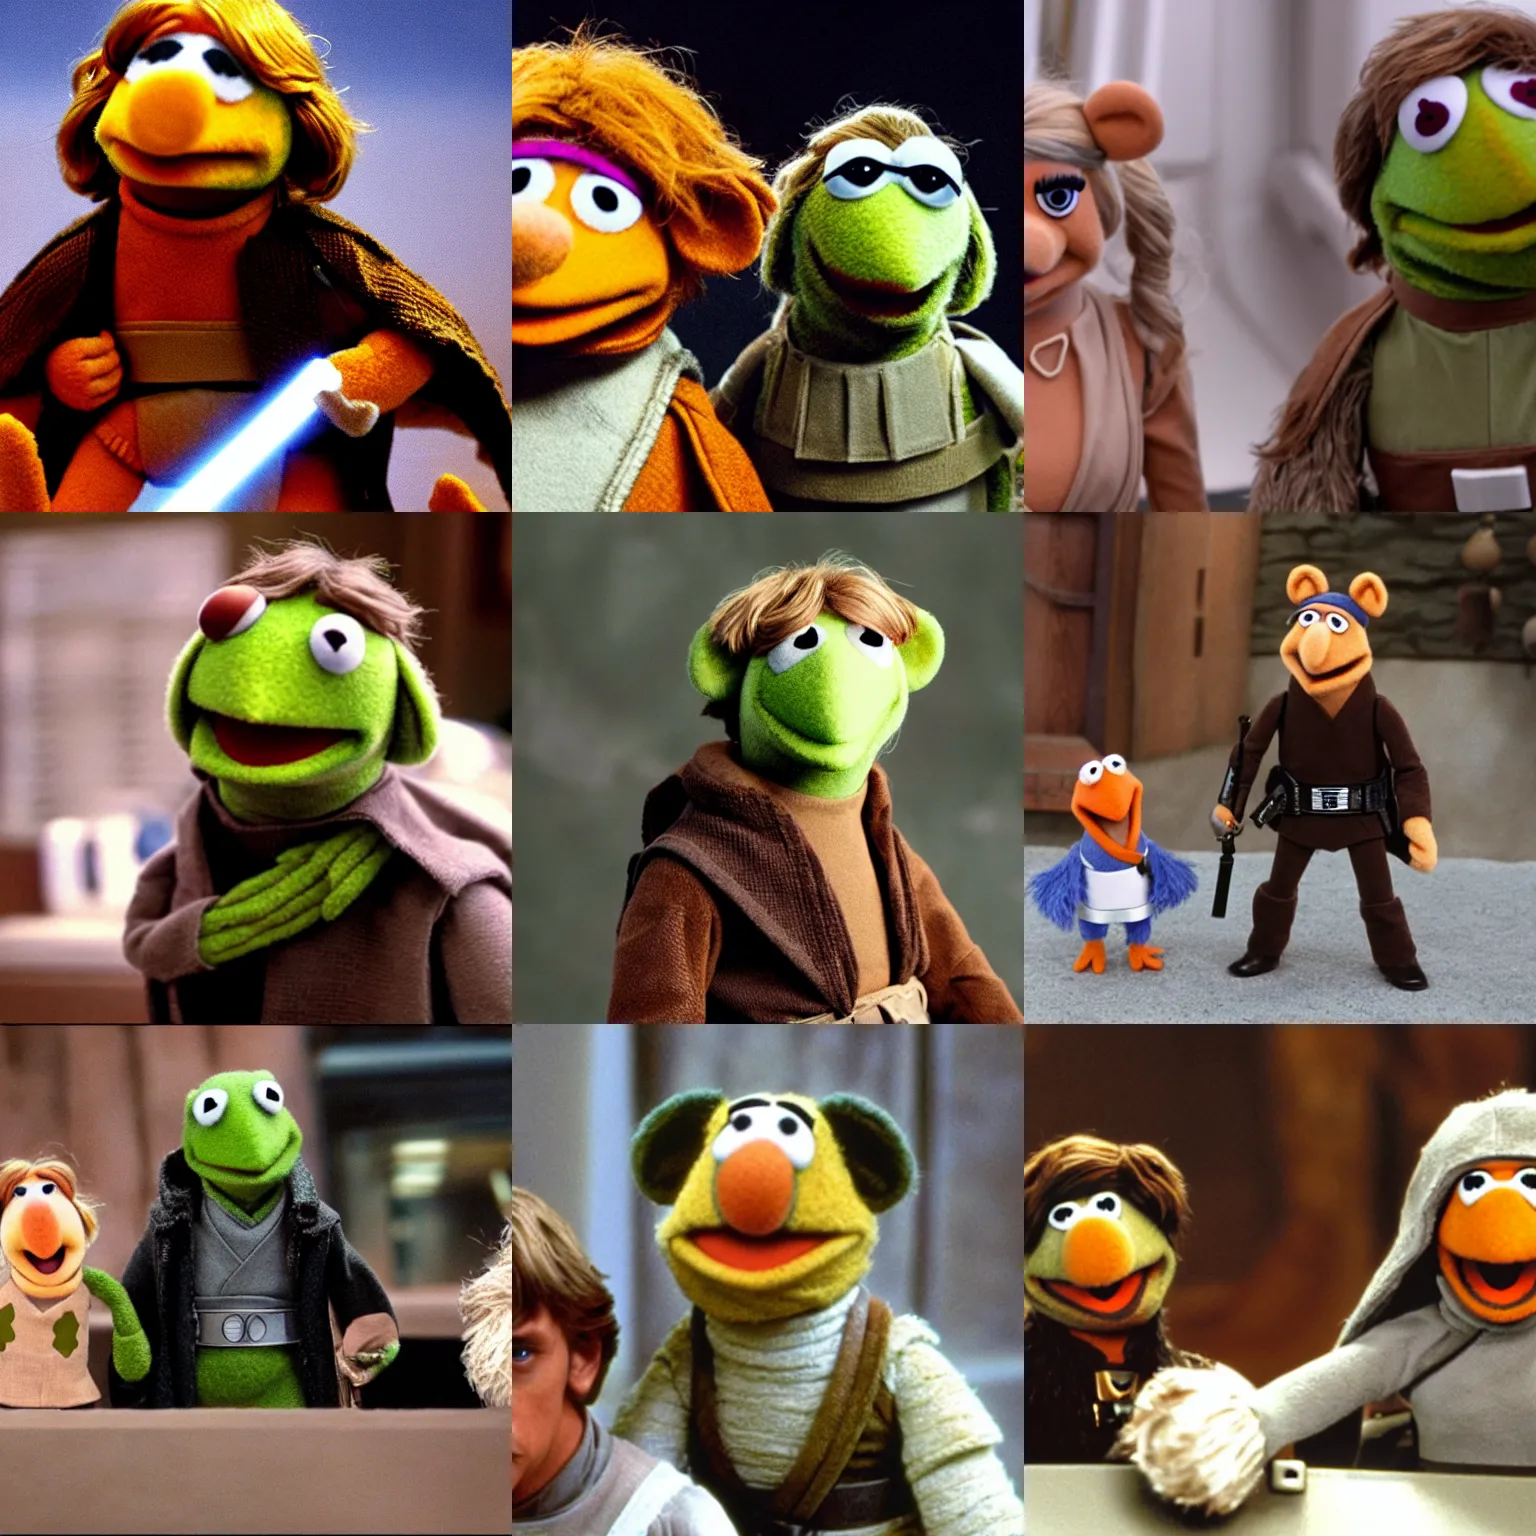 Prompt: Luke Skywalker in The Muppets